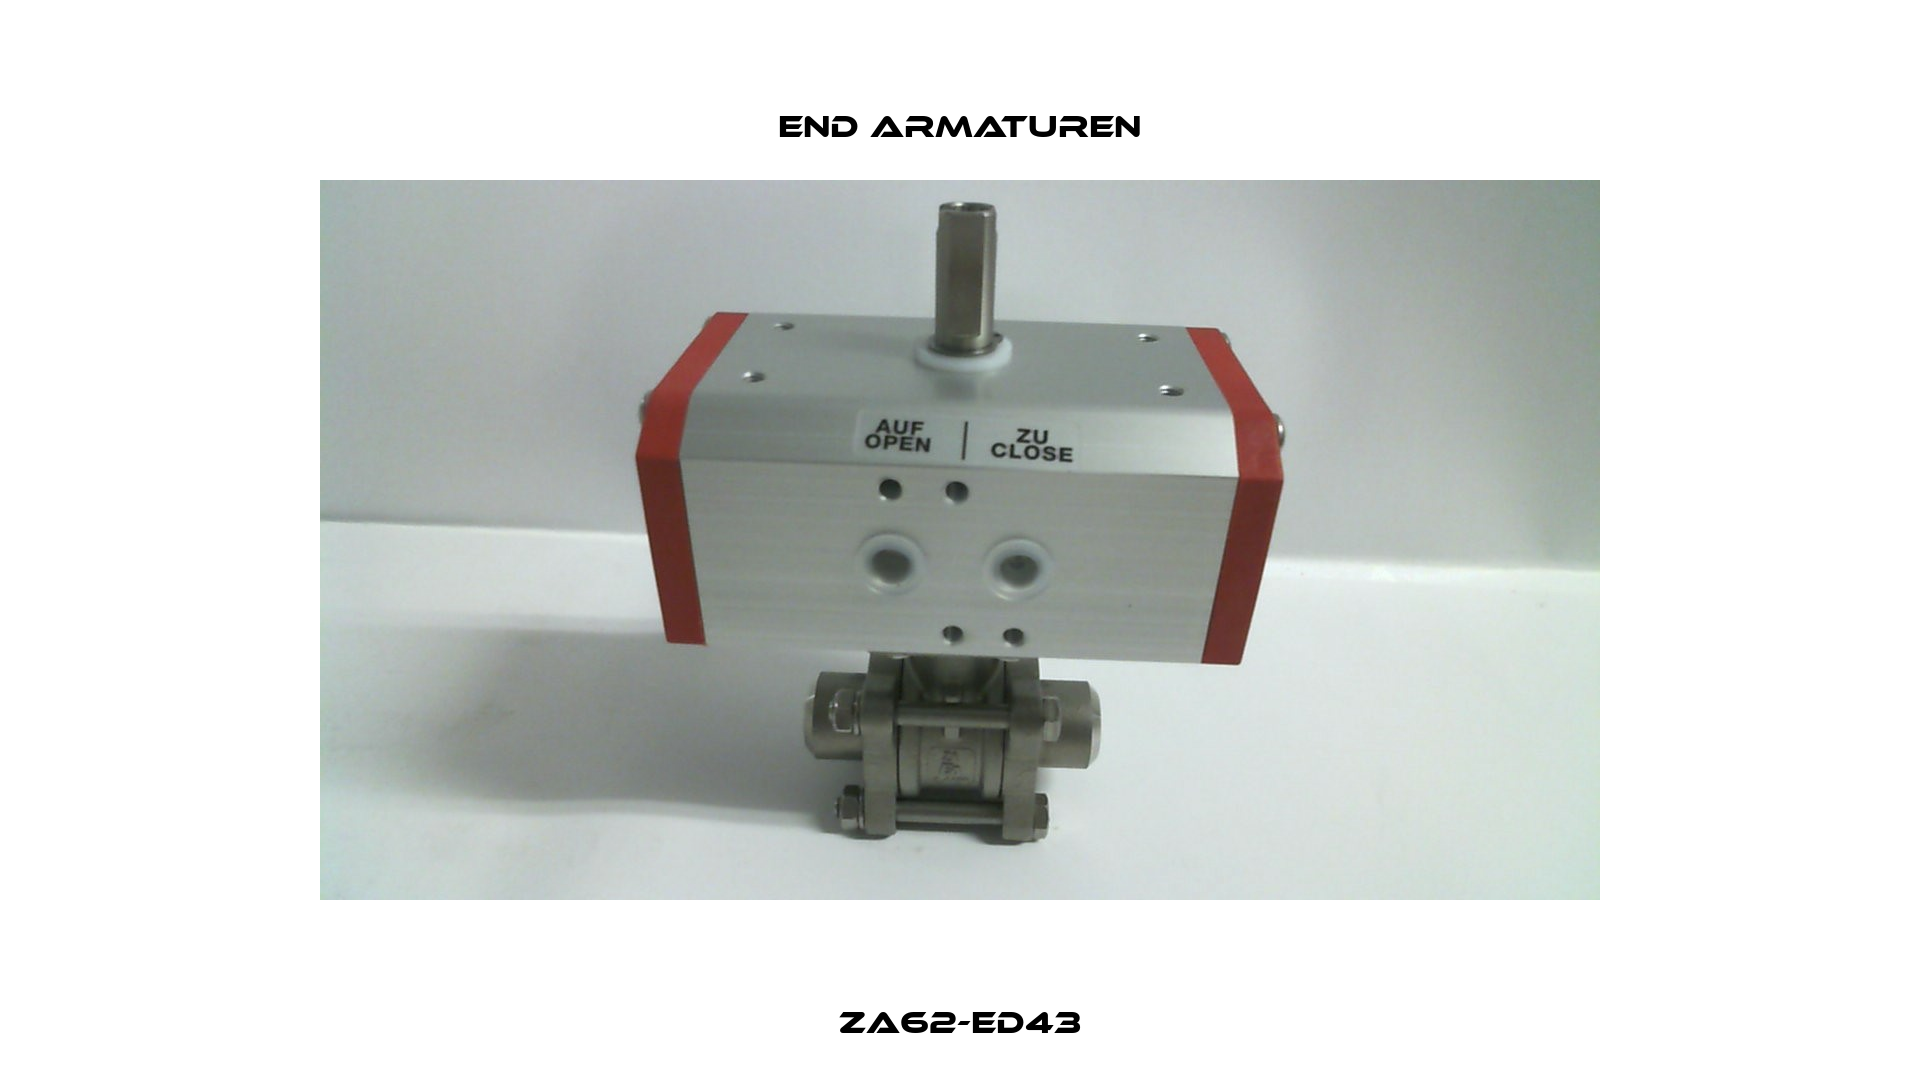 ZA62-ED43 End Armaturen